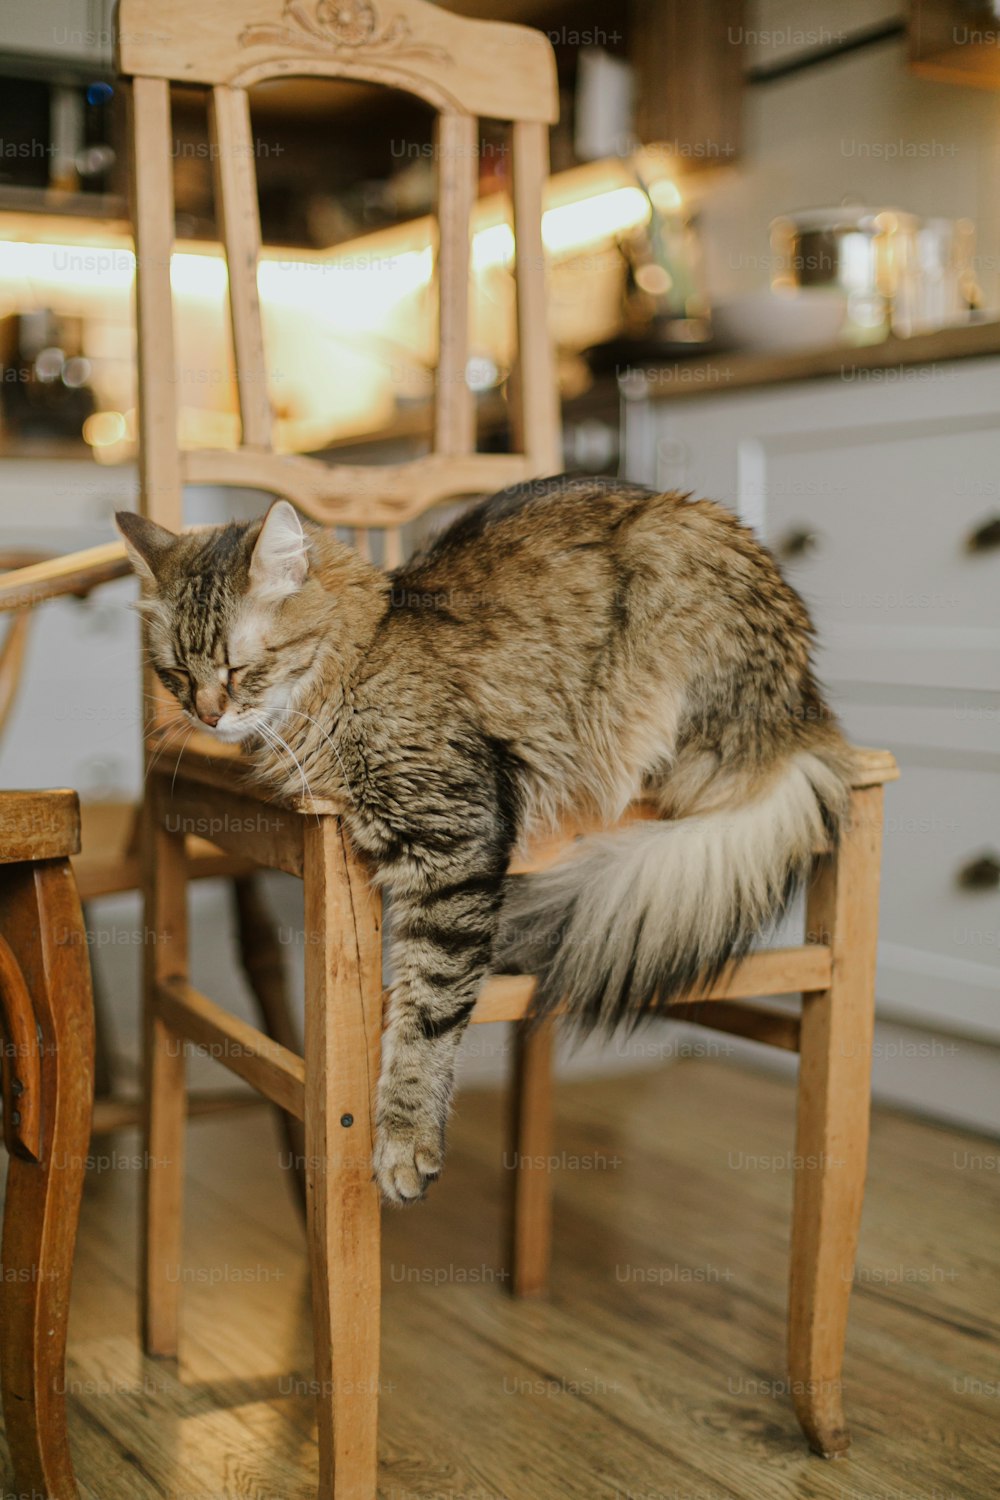 Simpatico gatto soriano seduto su una sedia di legno rustica sullo sfondo della cucina moderna. Adorabile Maine coon che dorme e si rilassa su una sedia retrò in casa